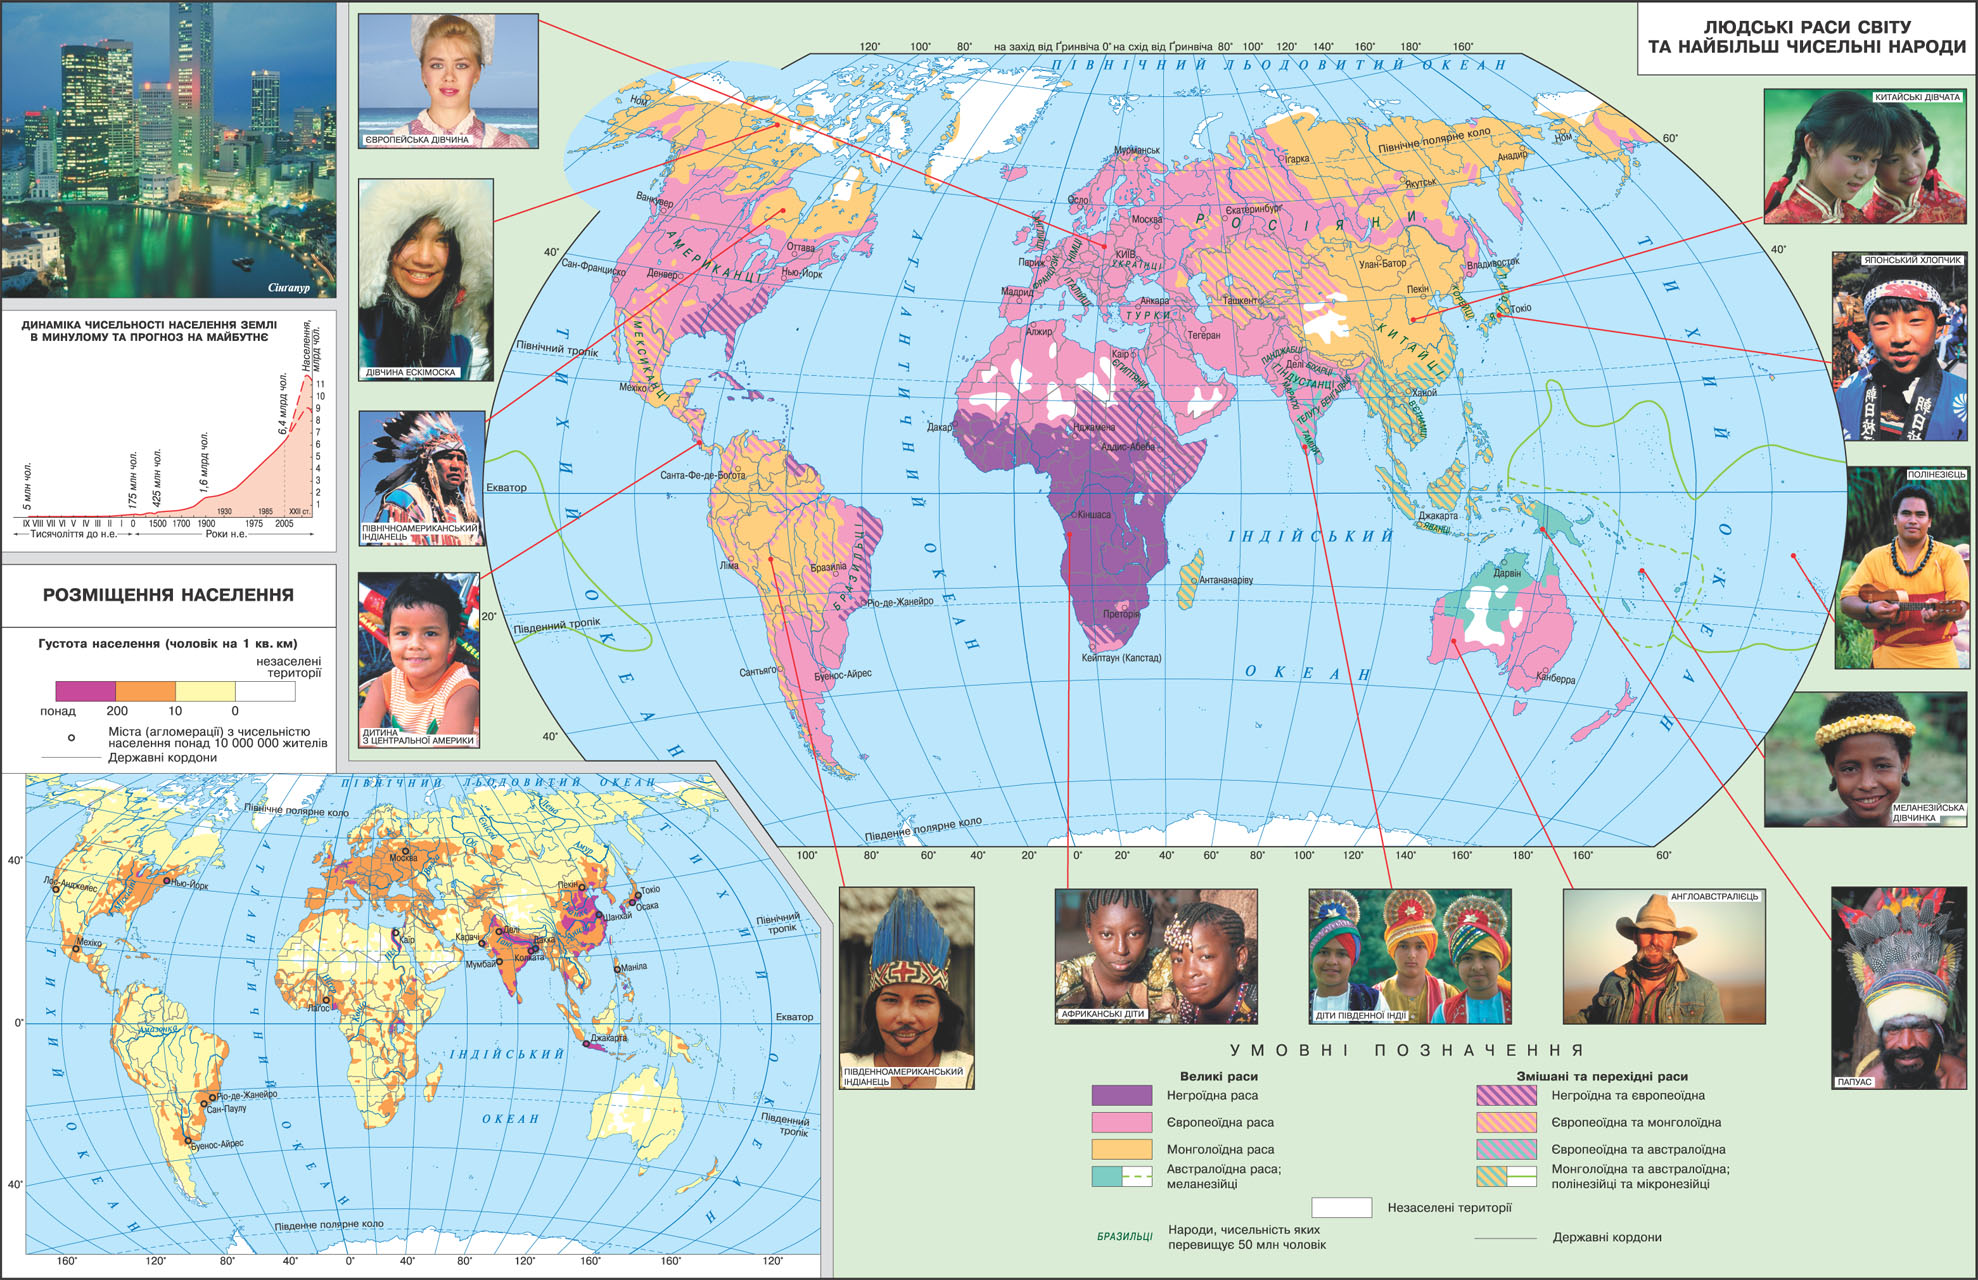 Людські раси світу та найбільш чисельні народи